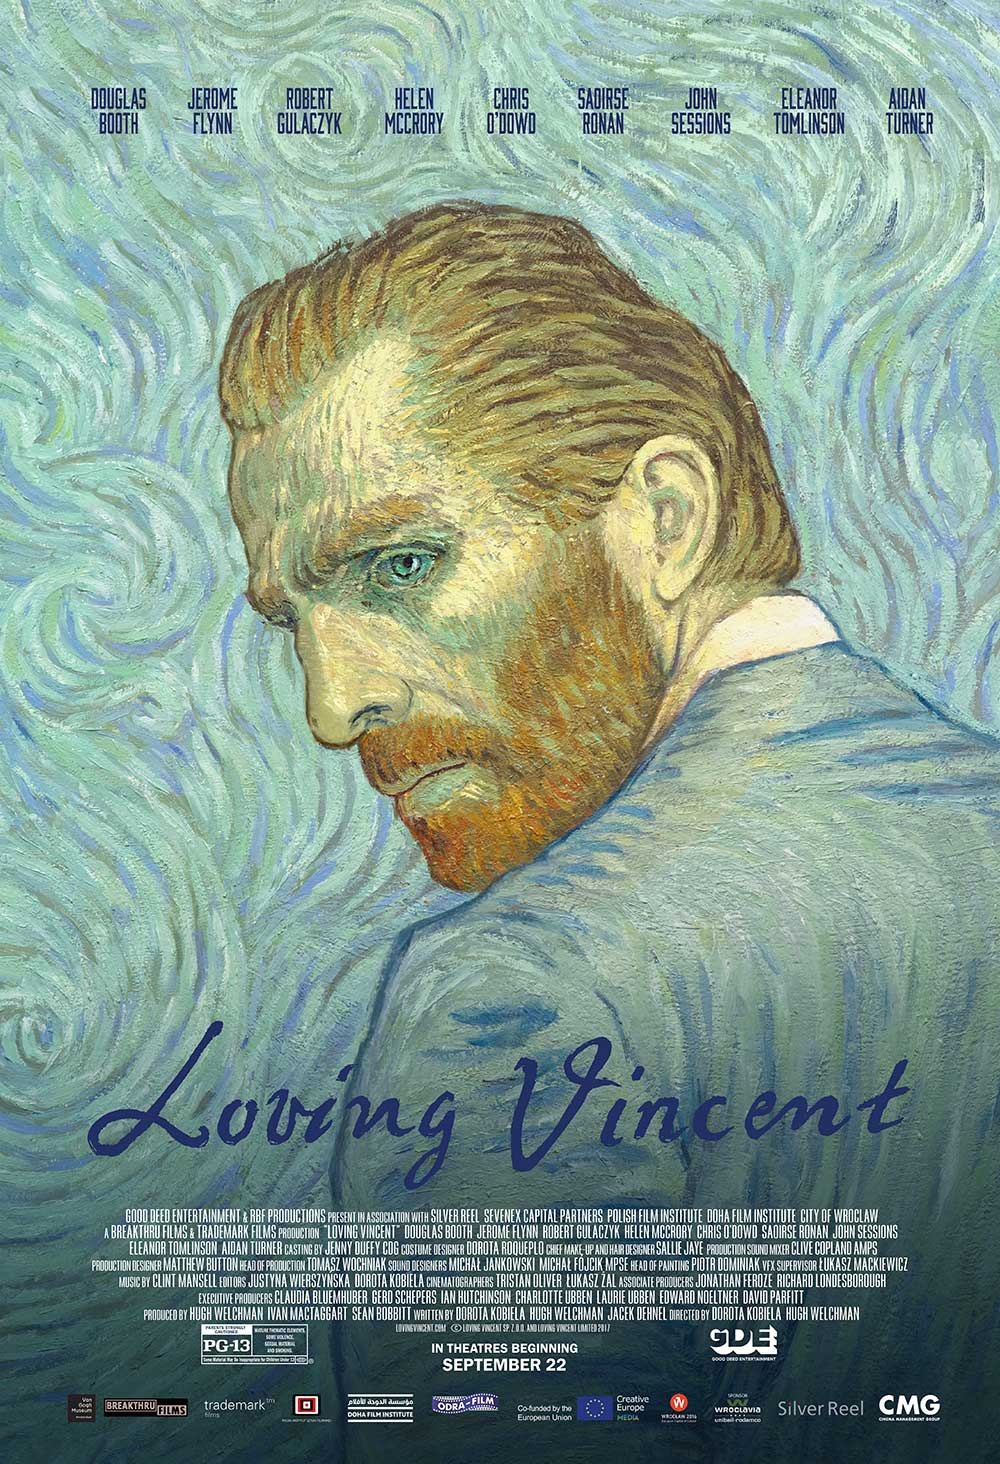 ดูหนังออนไลน์ฟรี Loving Vincent 2017 ภาพสุดท้ายของแวนโก๊ะ ดูหนังชนโรงฟรี